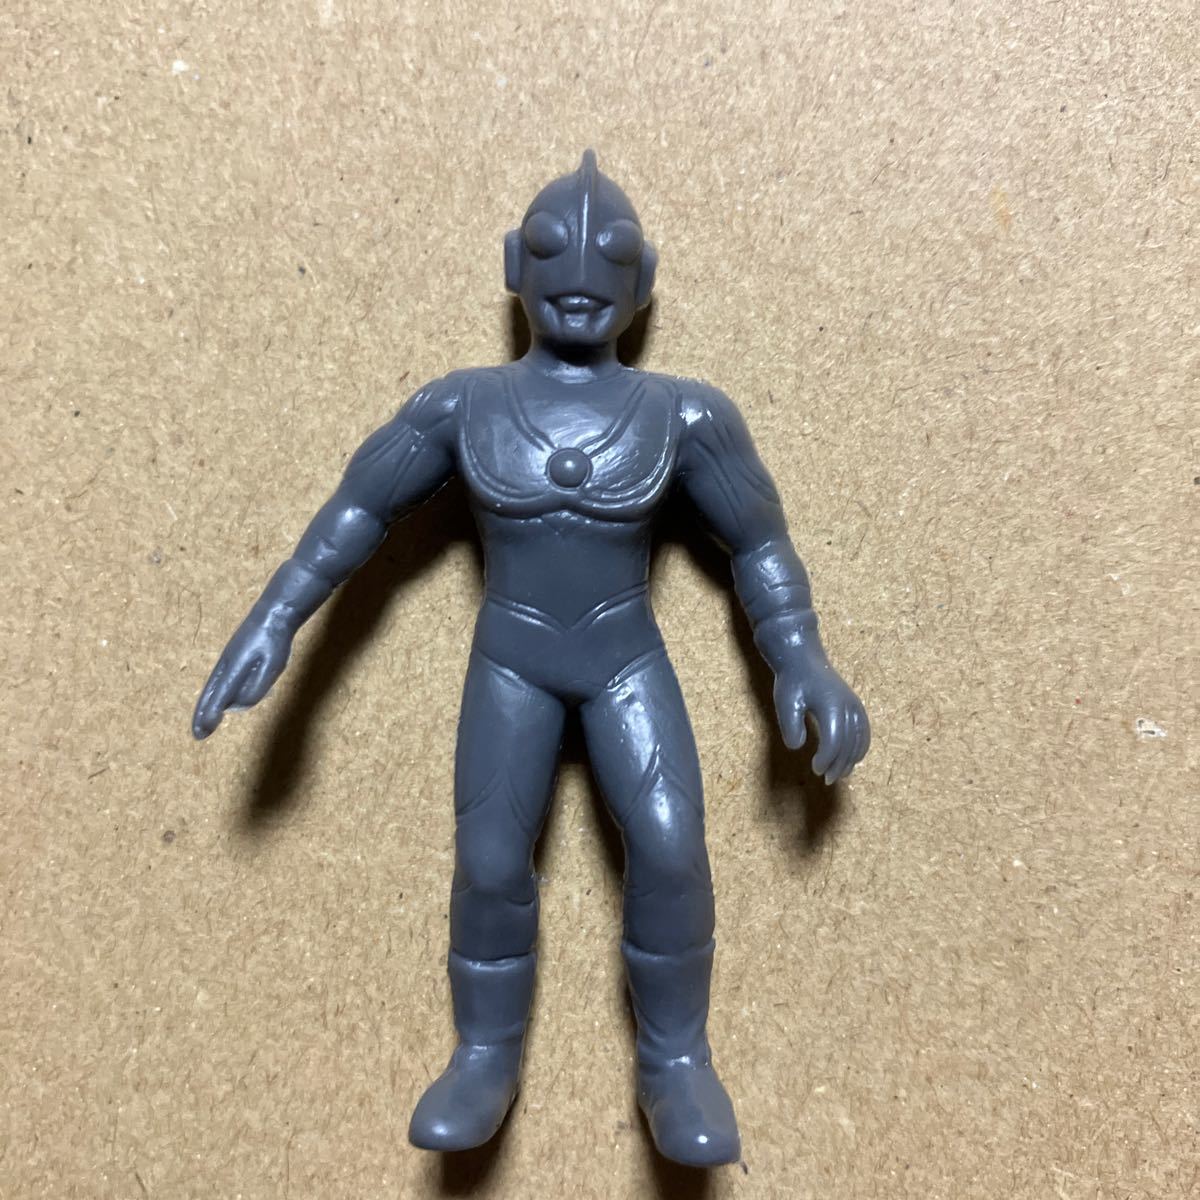  спецэффекты Ultraman ластик фигурка примерно 5cm Fujiya Shokugan Return of Ultraman Jack серый для поиска монстр мак gashapon 